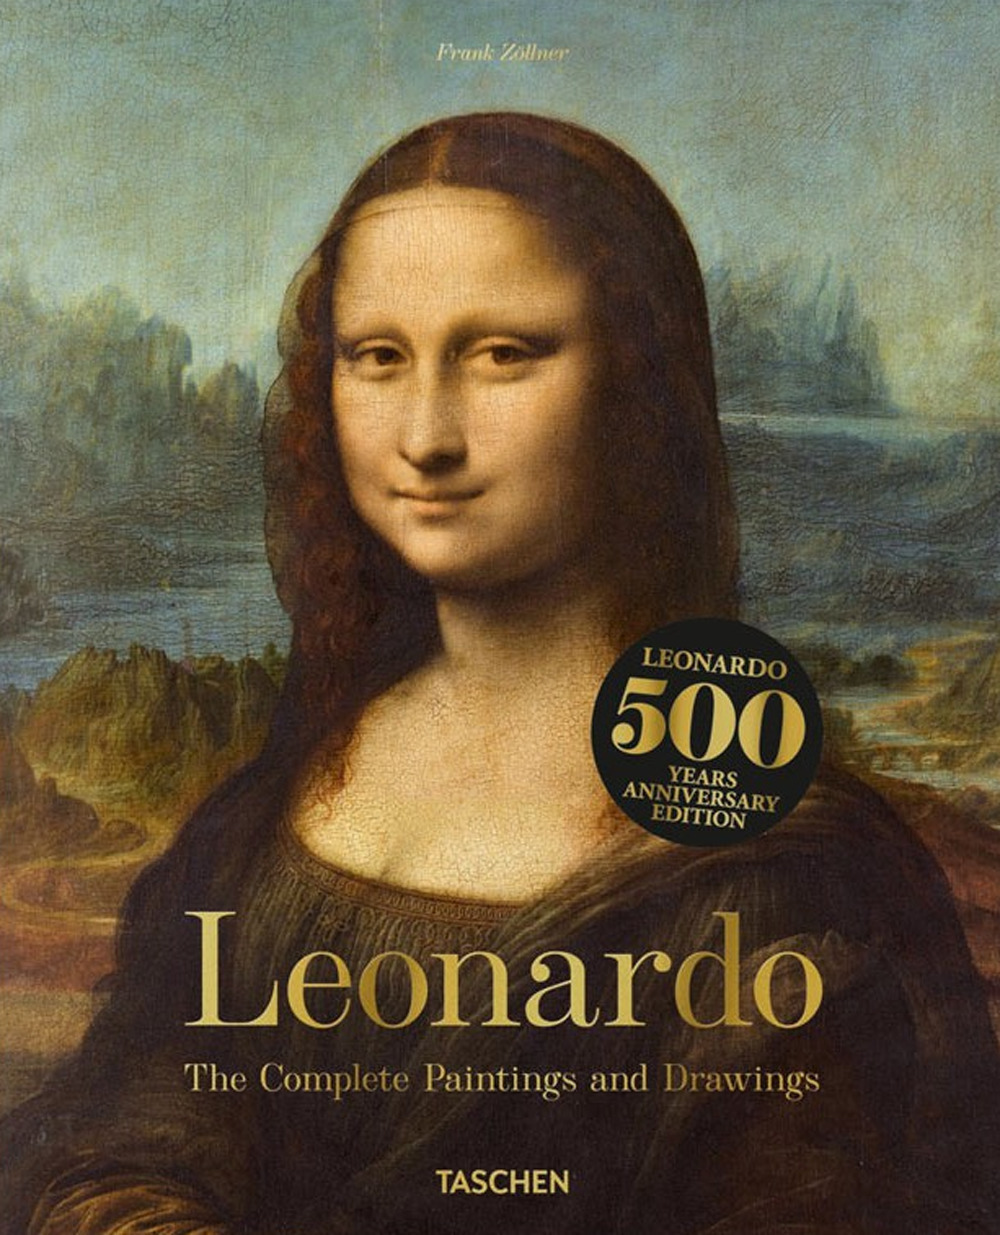 Libri Johannes Nathan / Frank ZÃ¶llner - Leonardo. The Complete Paintings And Drawings (English Edition) NUOVO SIGILLATO, EDIZIONE DEL 11/04/2019 SUBITO DISPONIBILE